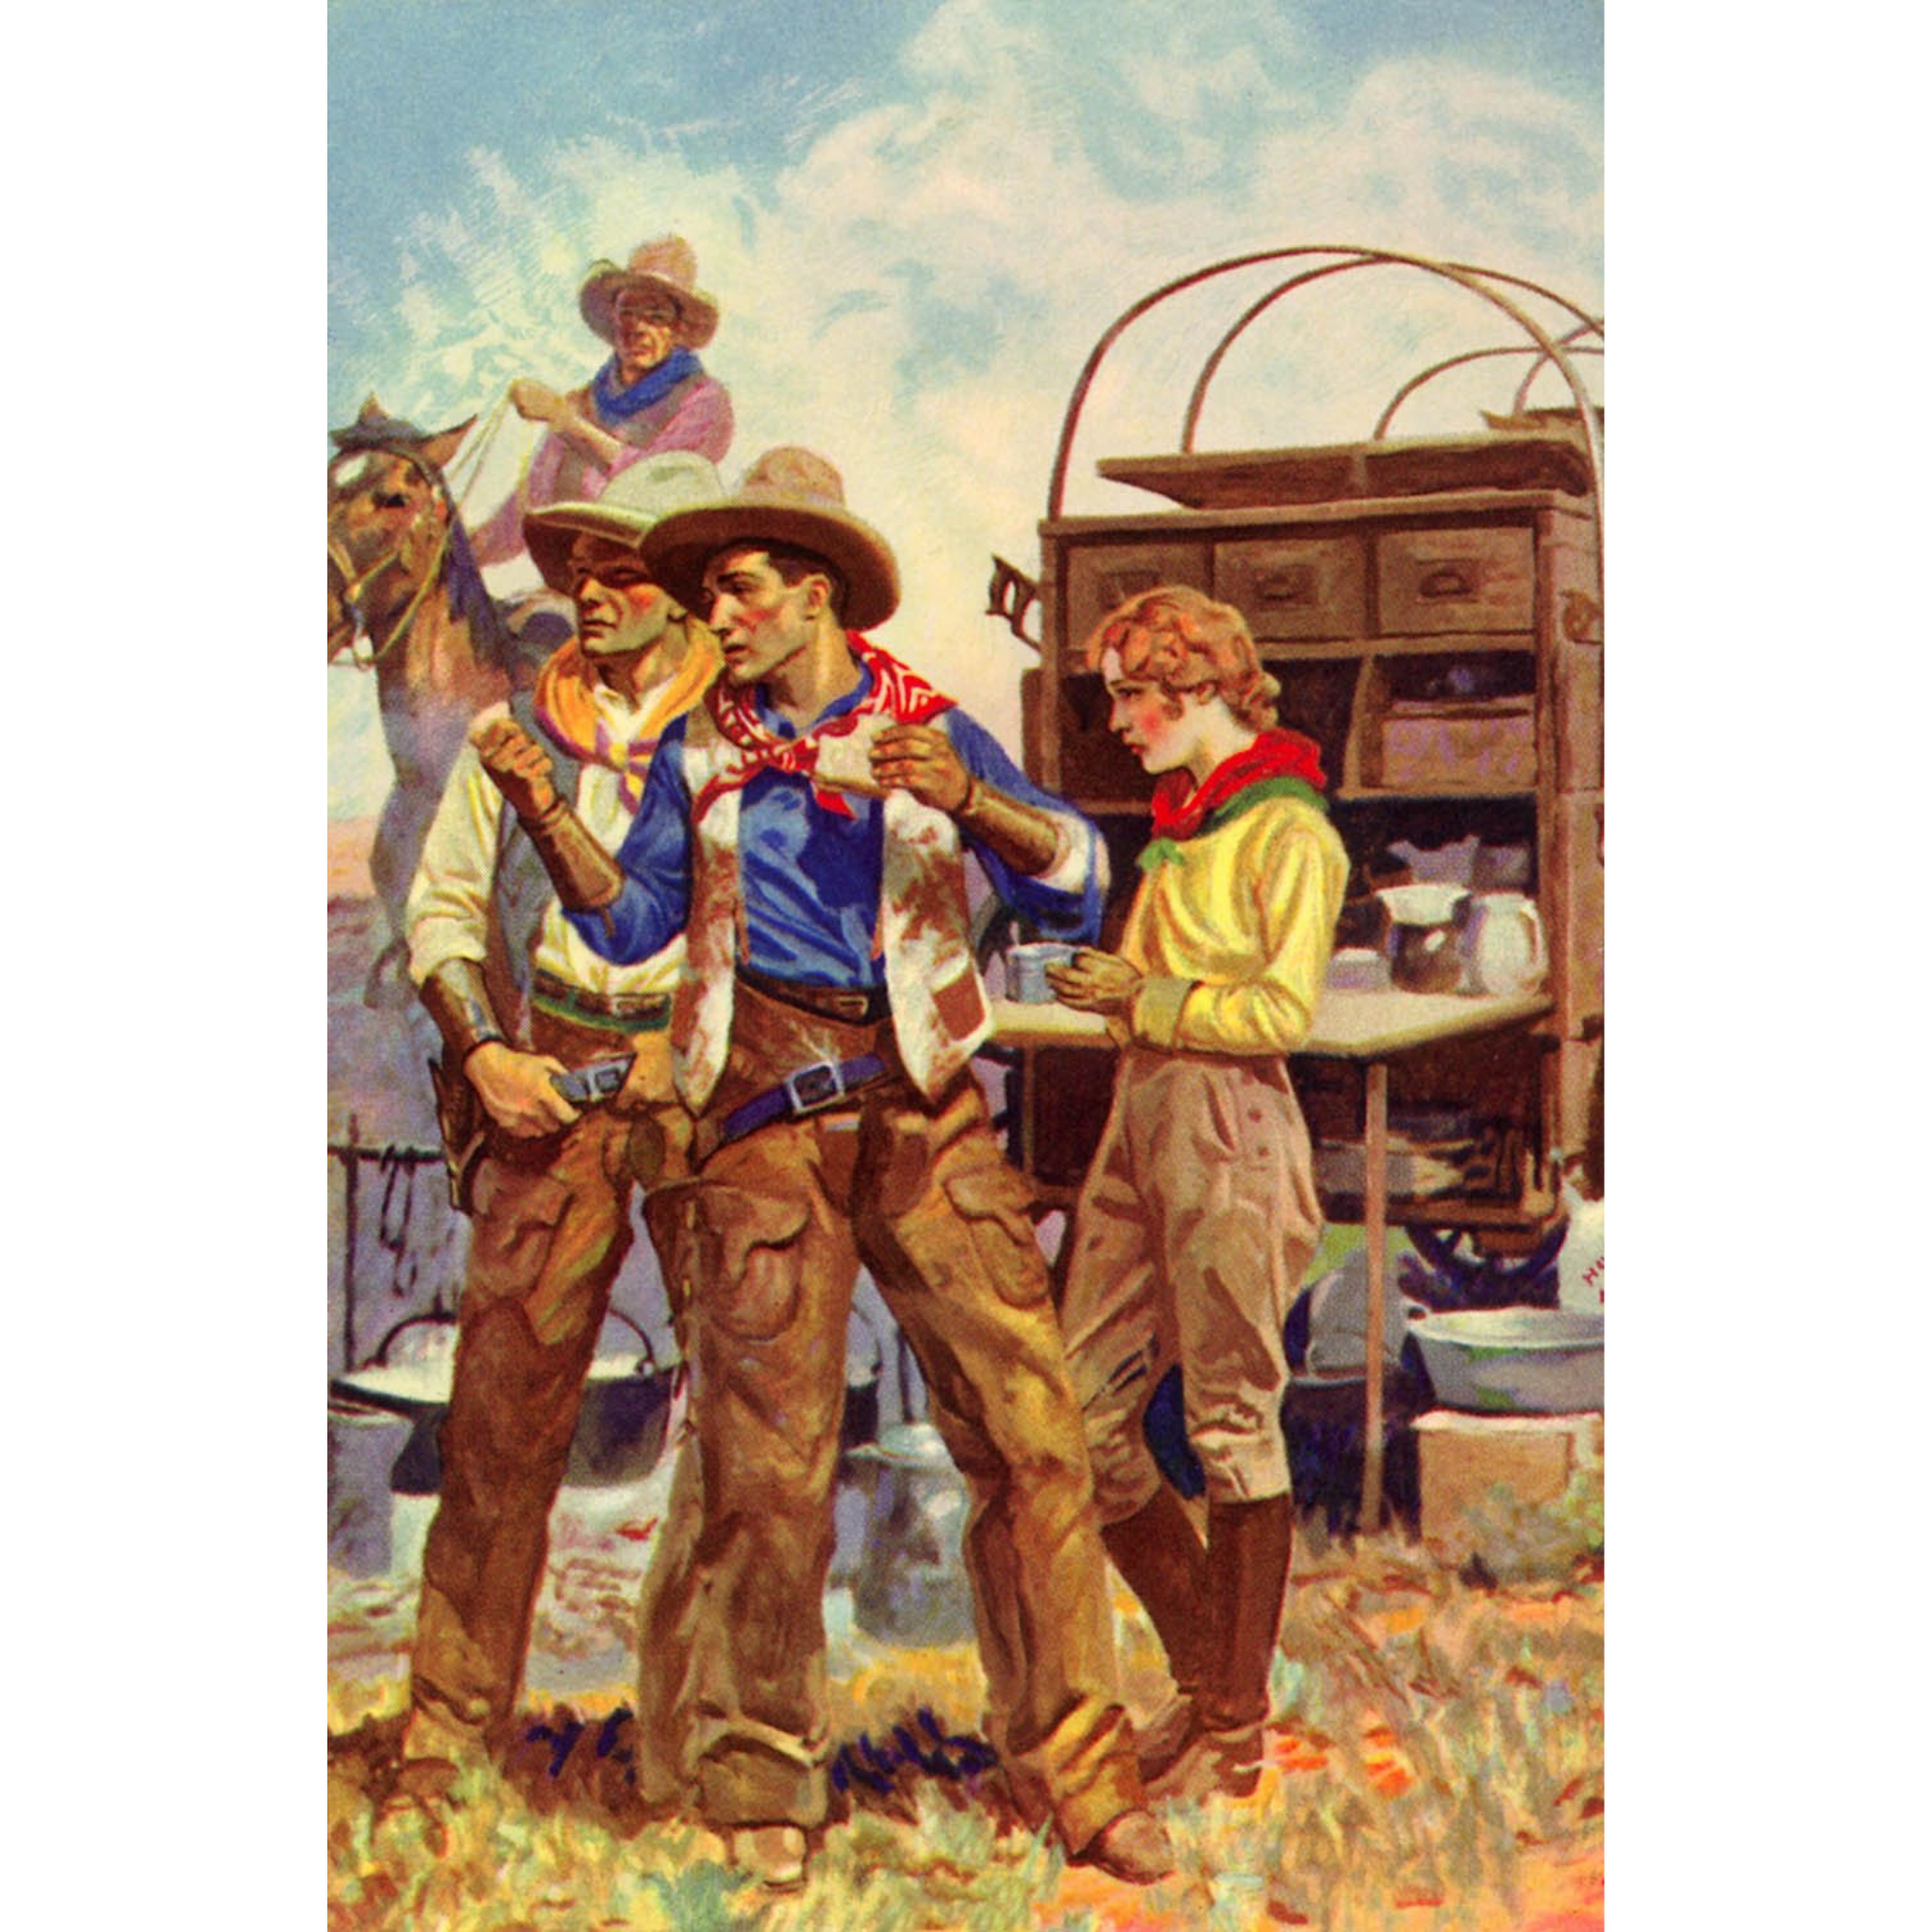 Cowboys and Cowgirl at Chuckwagon - ca. 1930 Lithograph